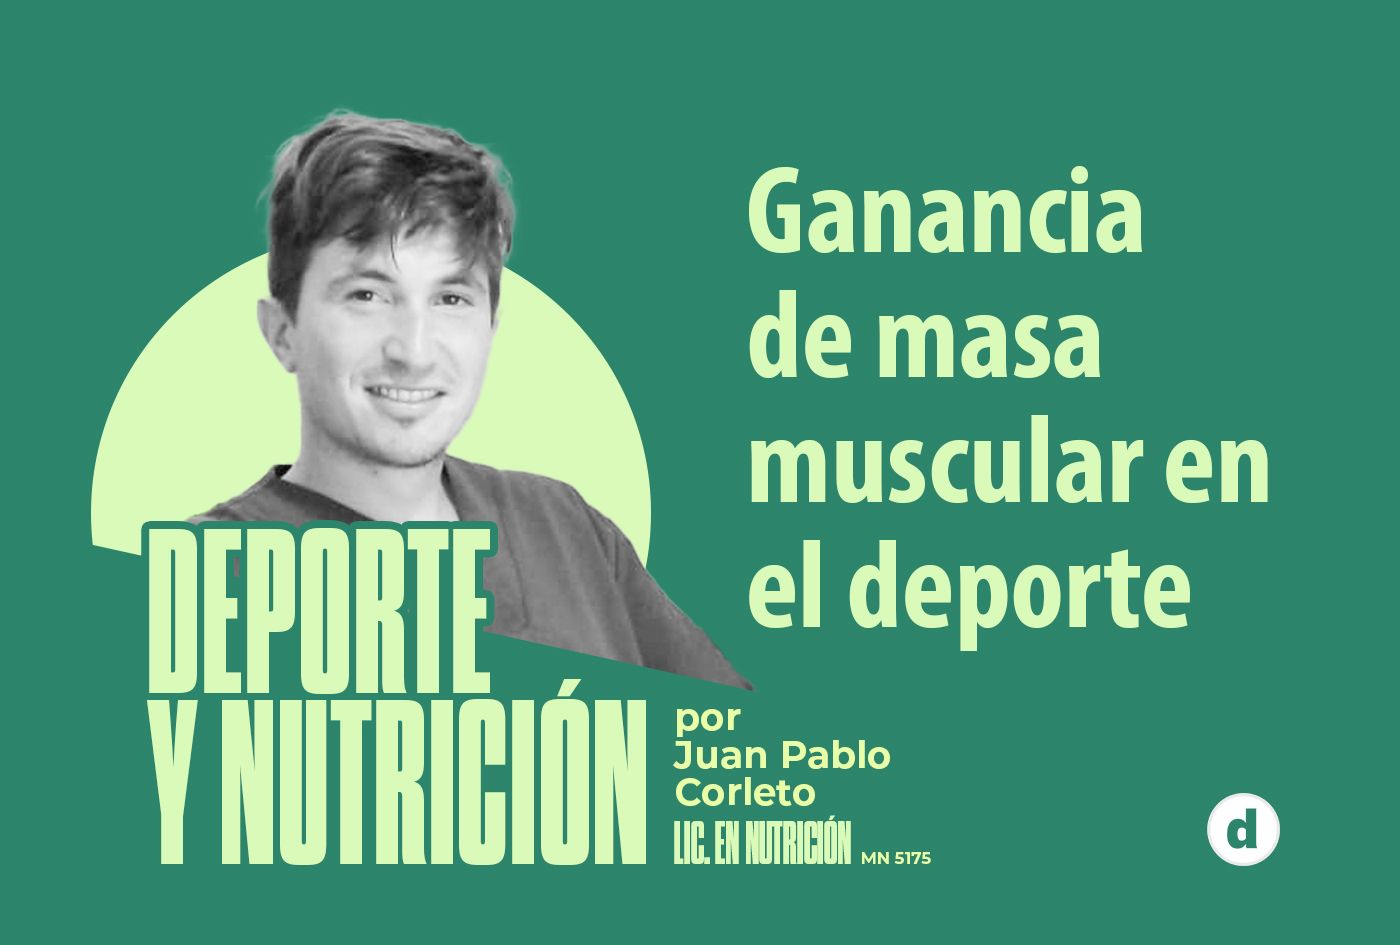 La columna del nutricionista Juan Pablo Corleto: “Ganancia de masa muscular en el deporte”